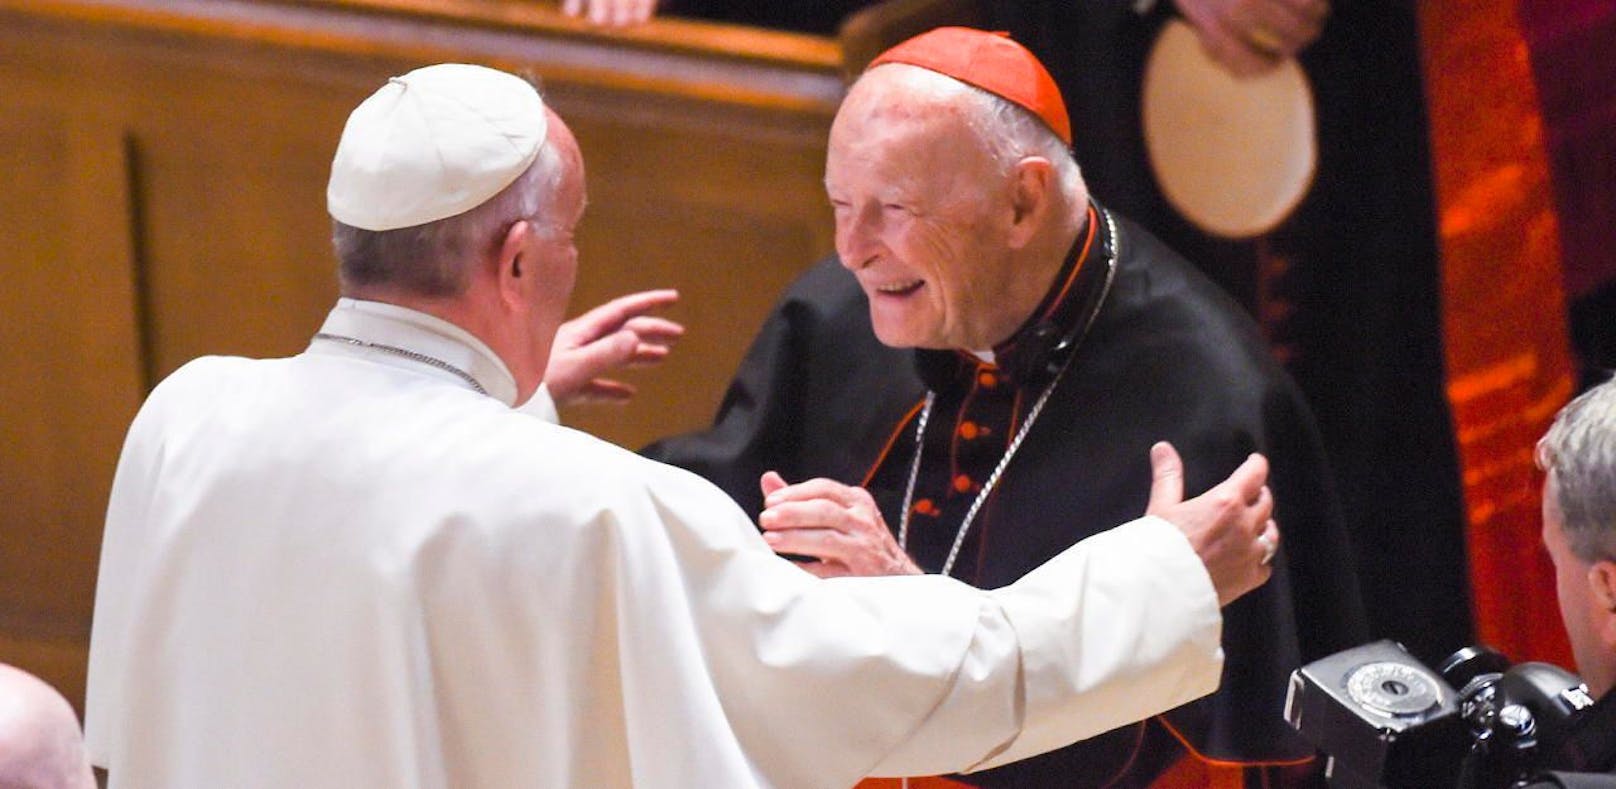 Papst Franziskus mit dem Ex-Kardinal Theodore McCarrick bei einem Papst-Besuch in den USA im Jahr 2015. Da soll er bereits über die Vorwürfe gegen McCarrick Bescheid gewusst haben.